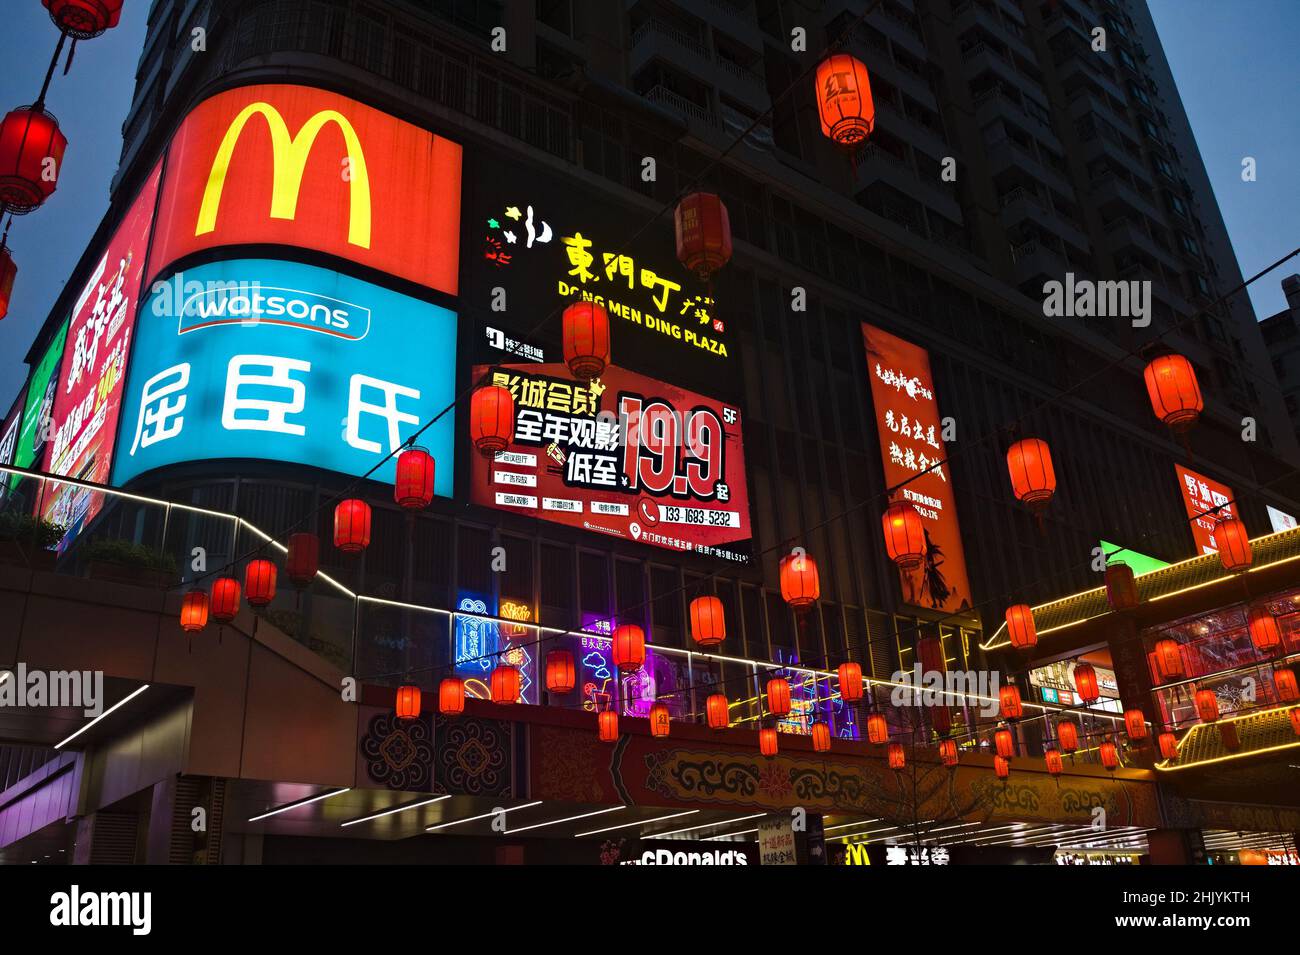 El logotipo de Big McDonald's se muestra de forma destacada en el lateral del edificio en Shenzhen, China Foto de stock